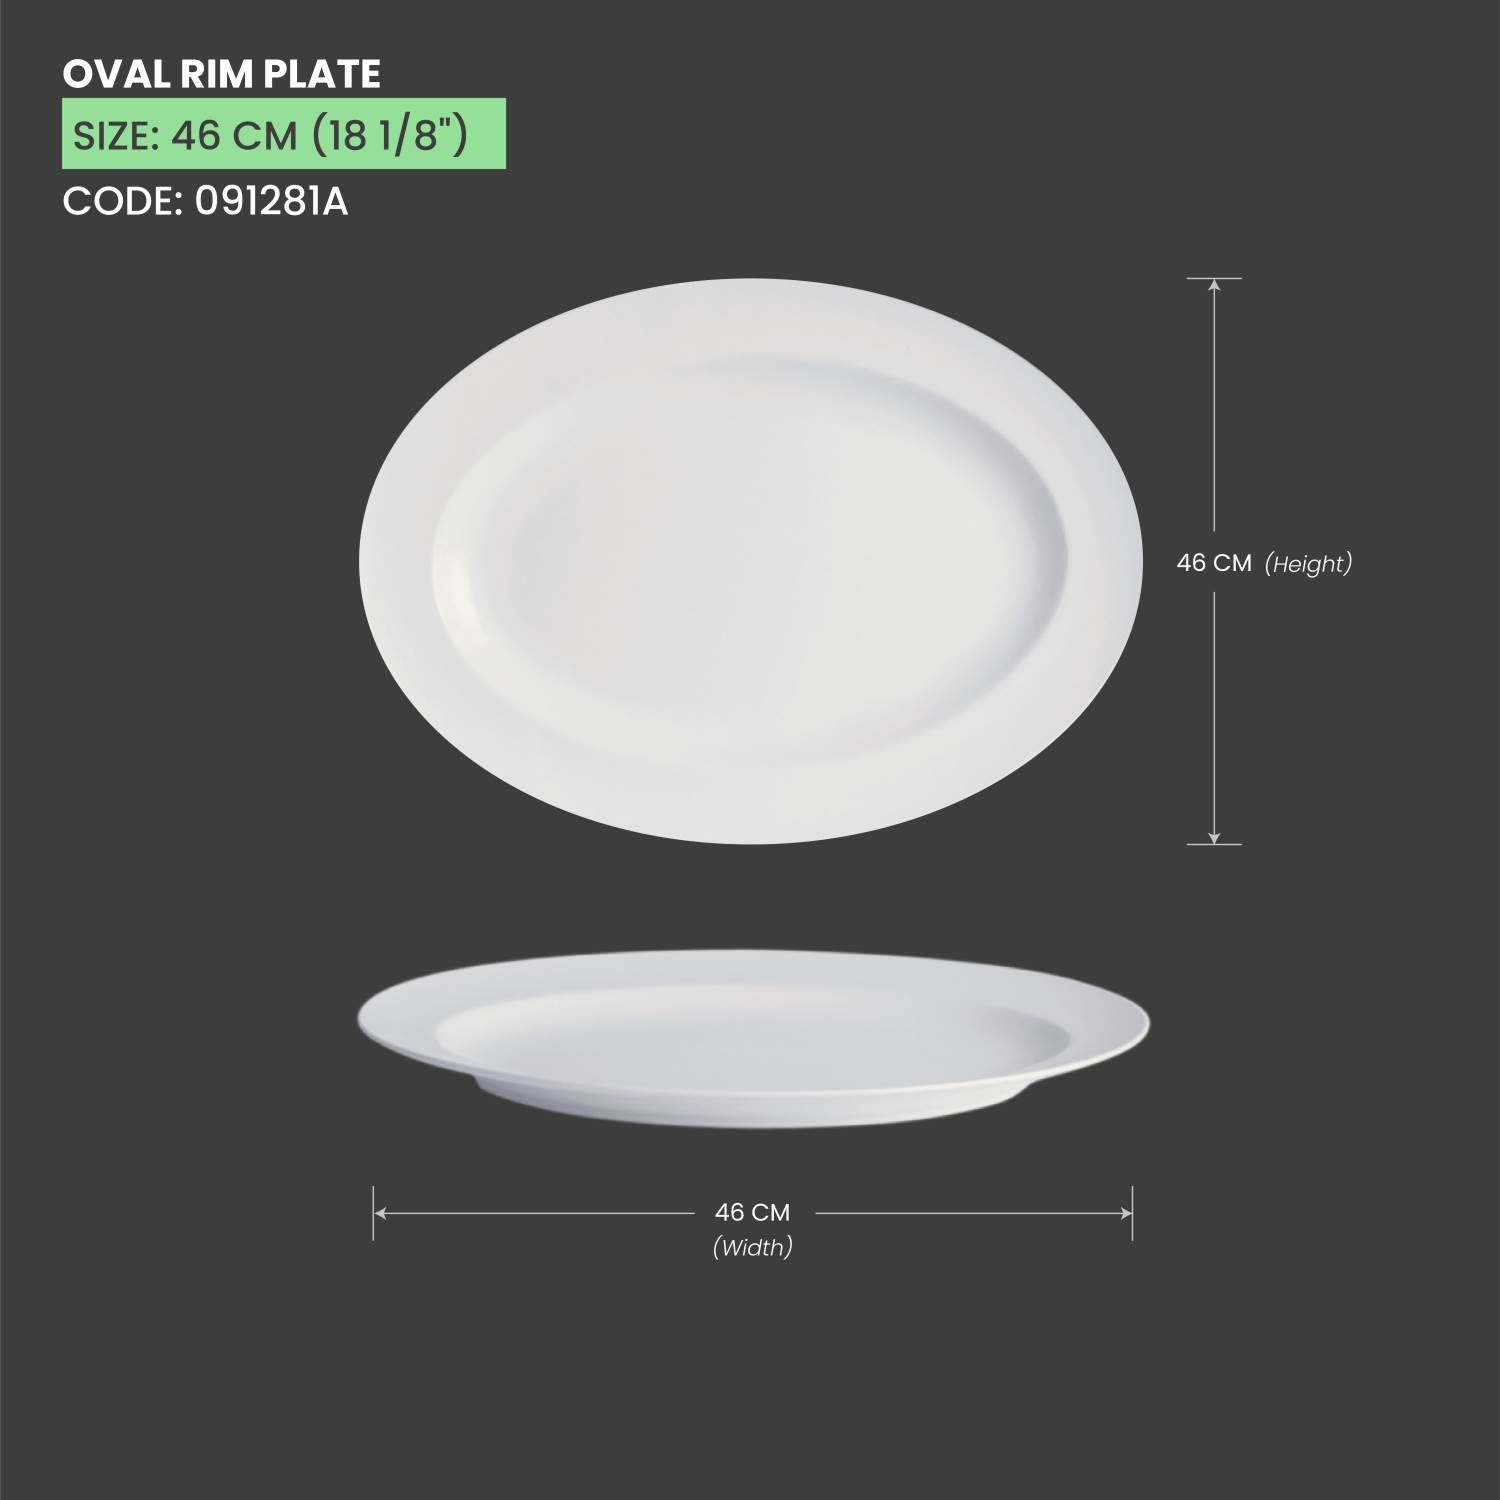 Baralee Simple Plus Oval Rim Plate